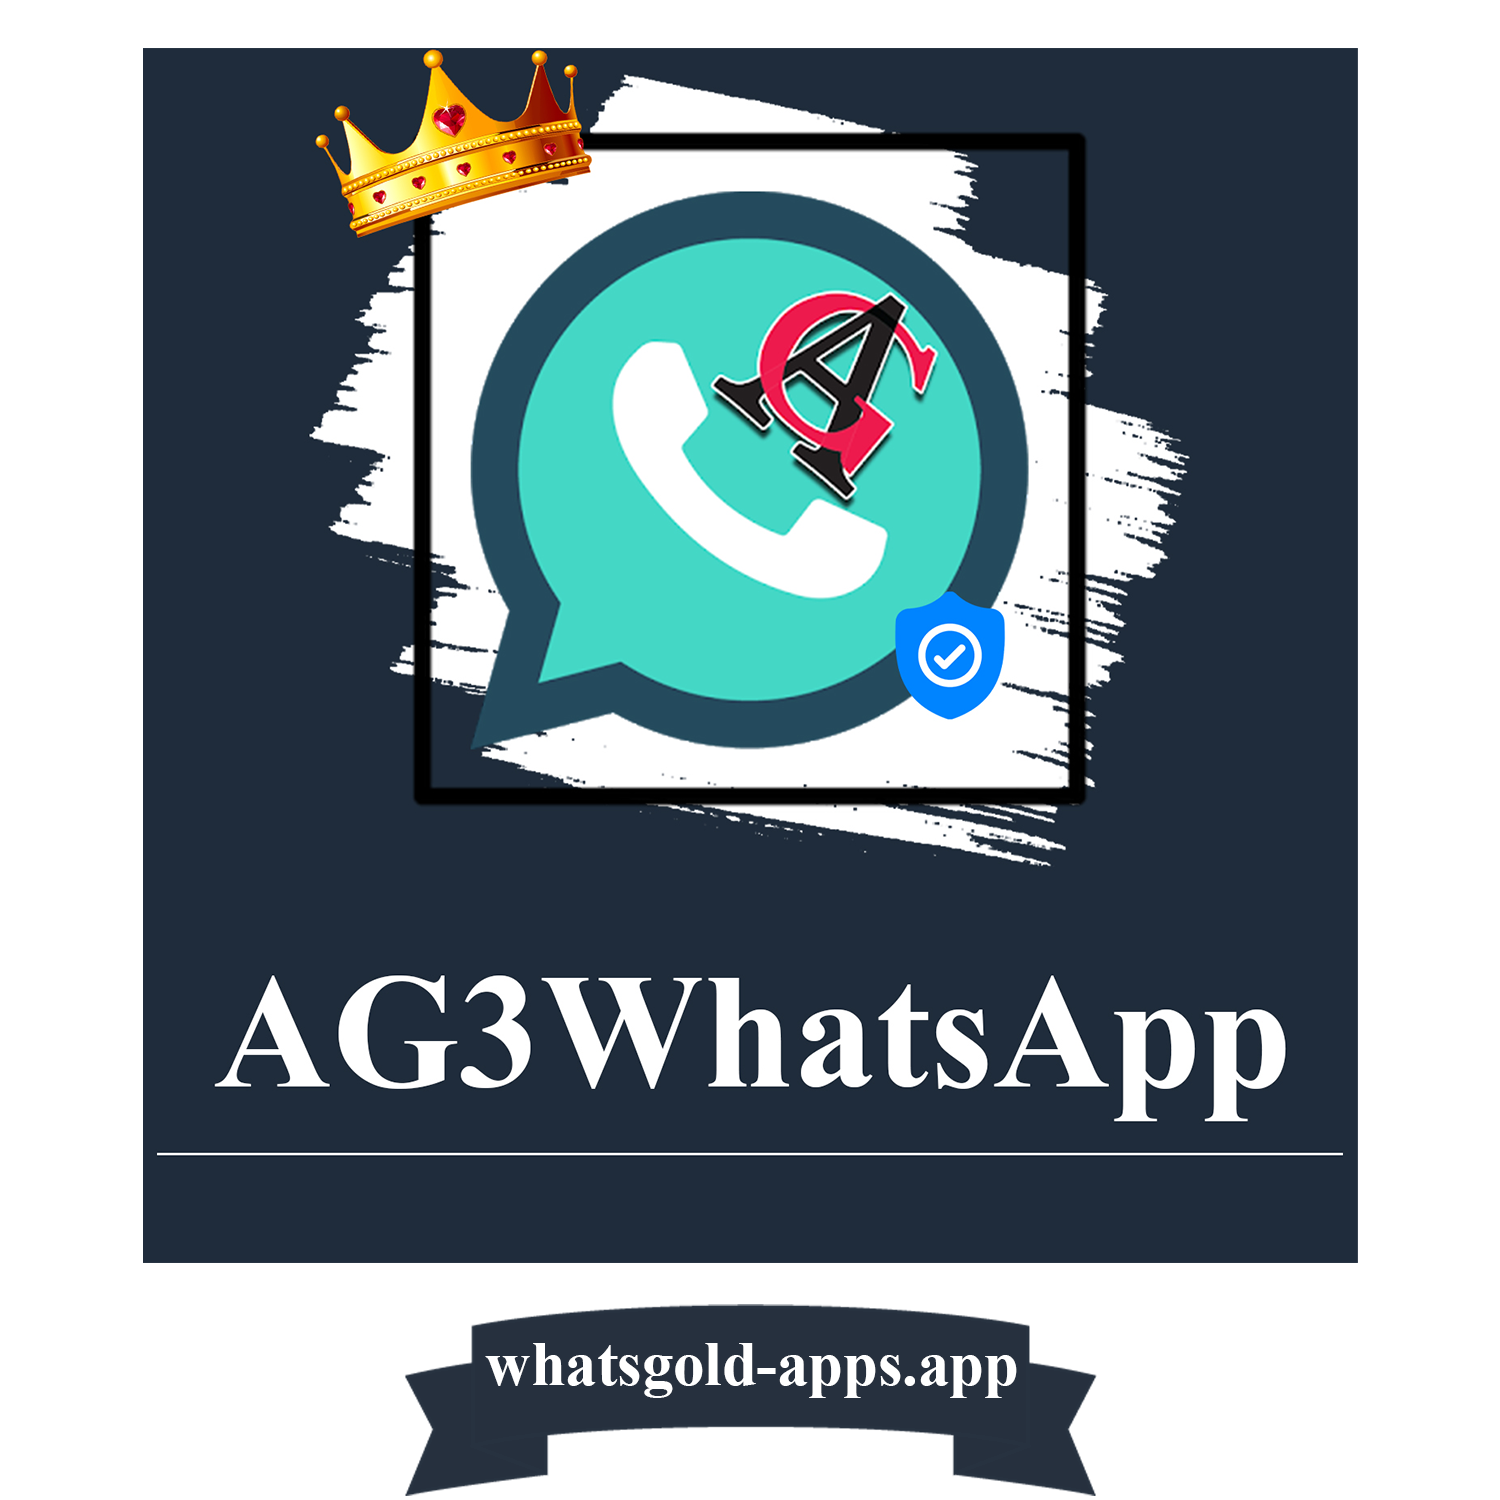 AG3whatsapp